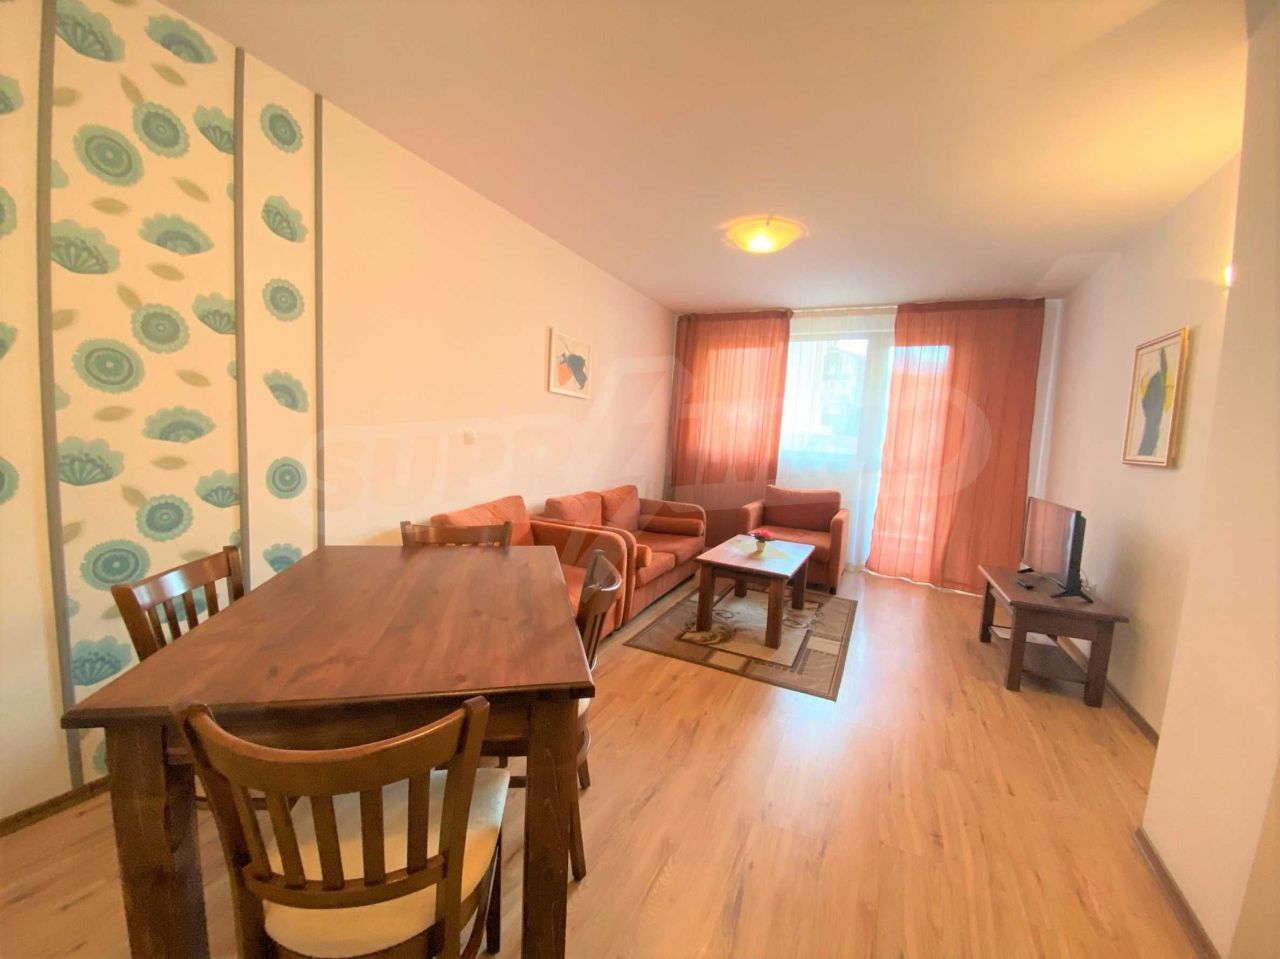 Apartment in Bansko, Bulgaria, 67.14 sq.m - picture 1